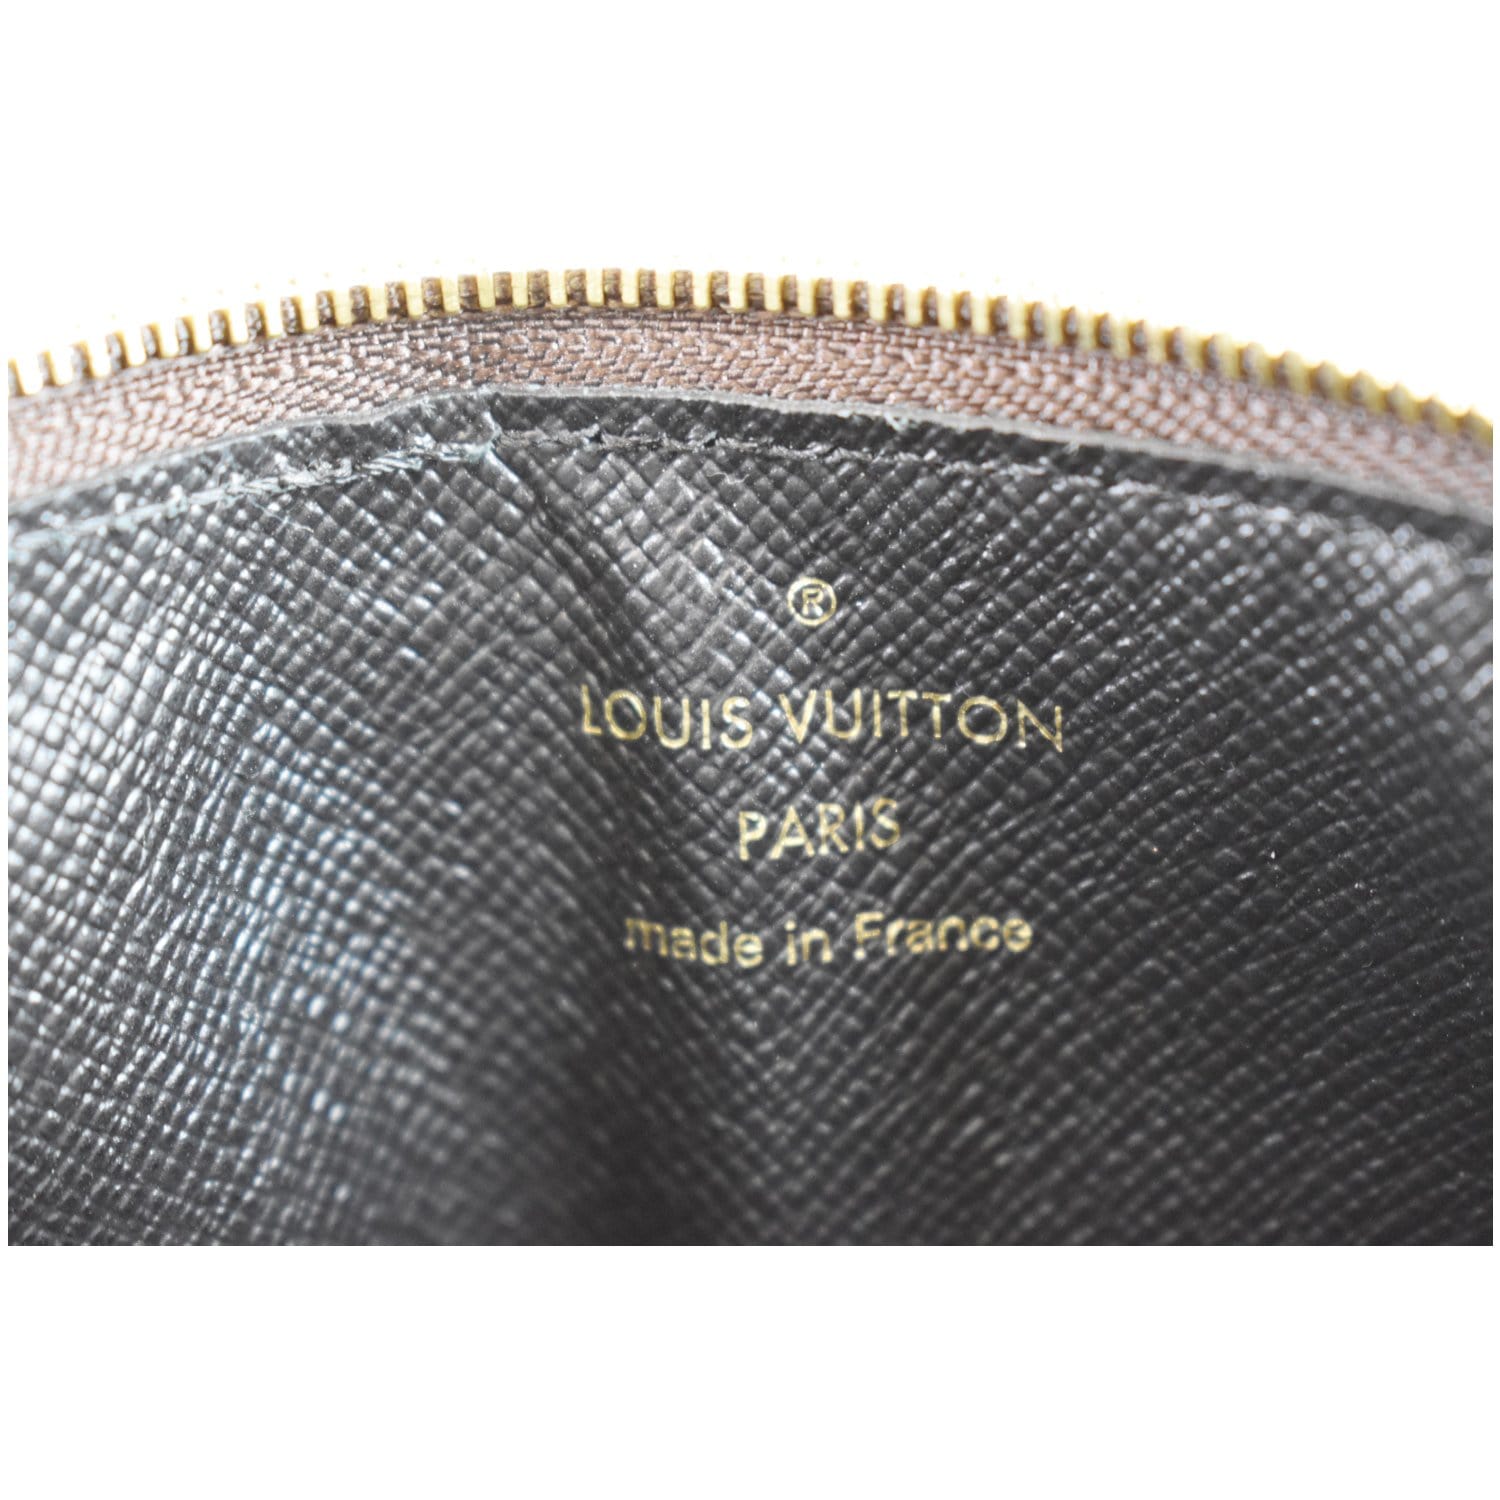 Louis Vuitton, Bags, Louis Vuitton Recto Verso Wallet